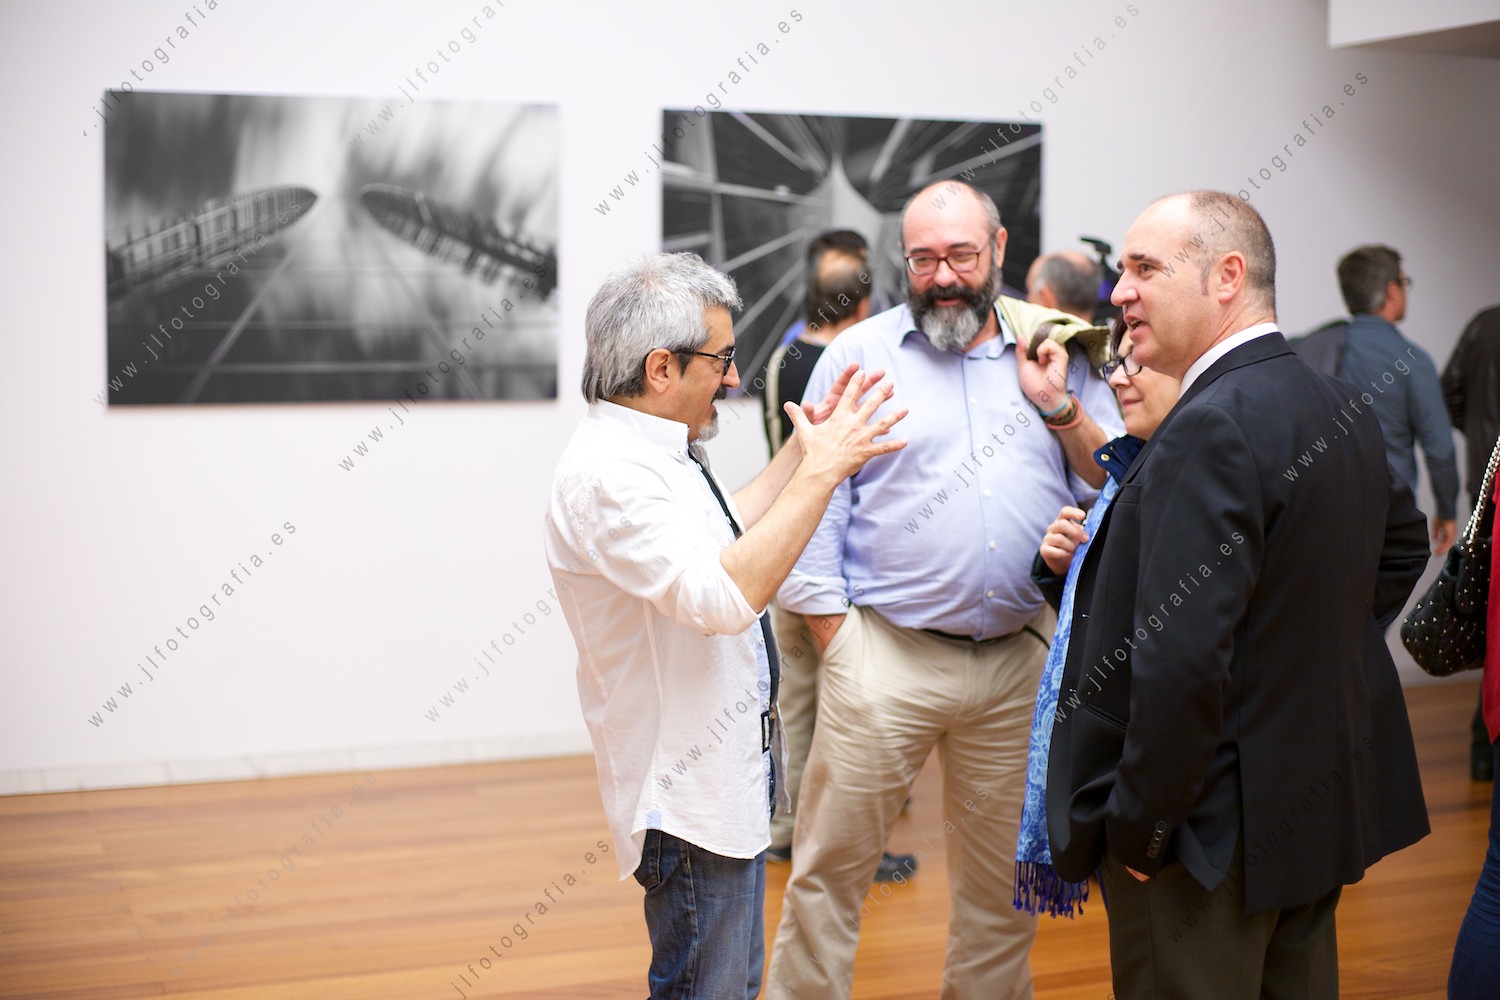 Agustín Sagasti, fotógrafo profesional conversando con amigos que vinieron a ver la inauguración de su exposición ARKT